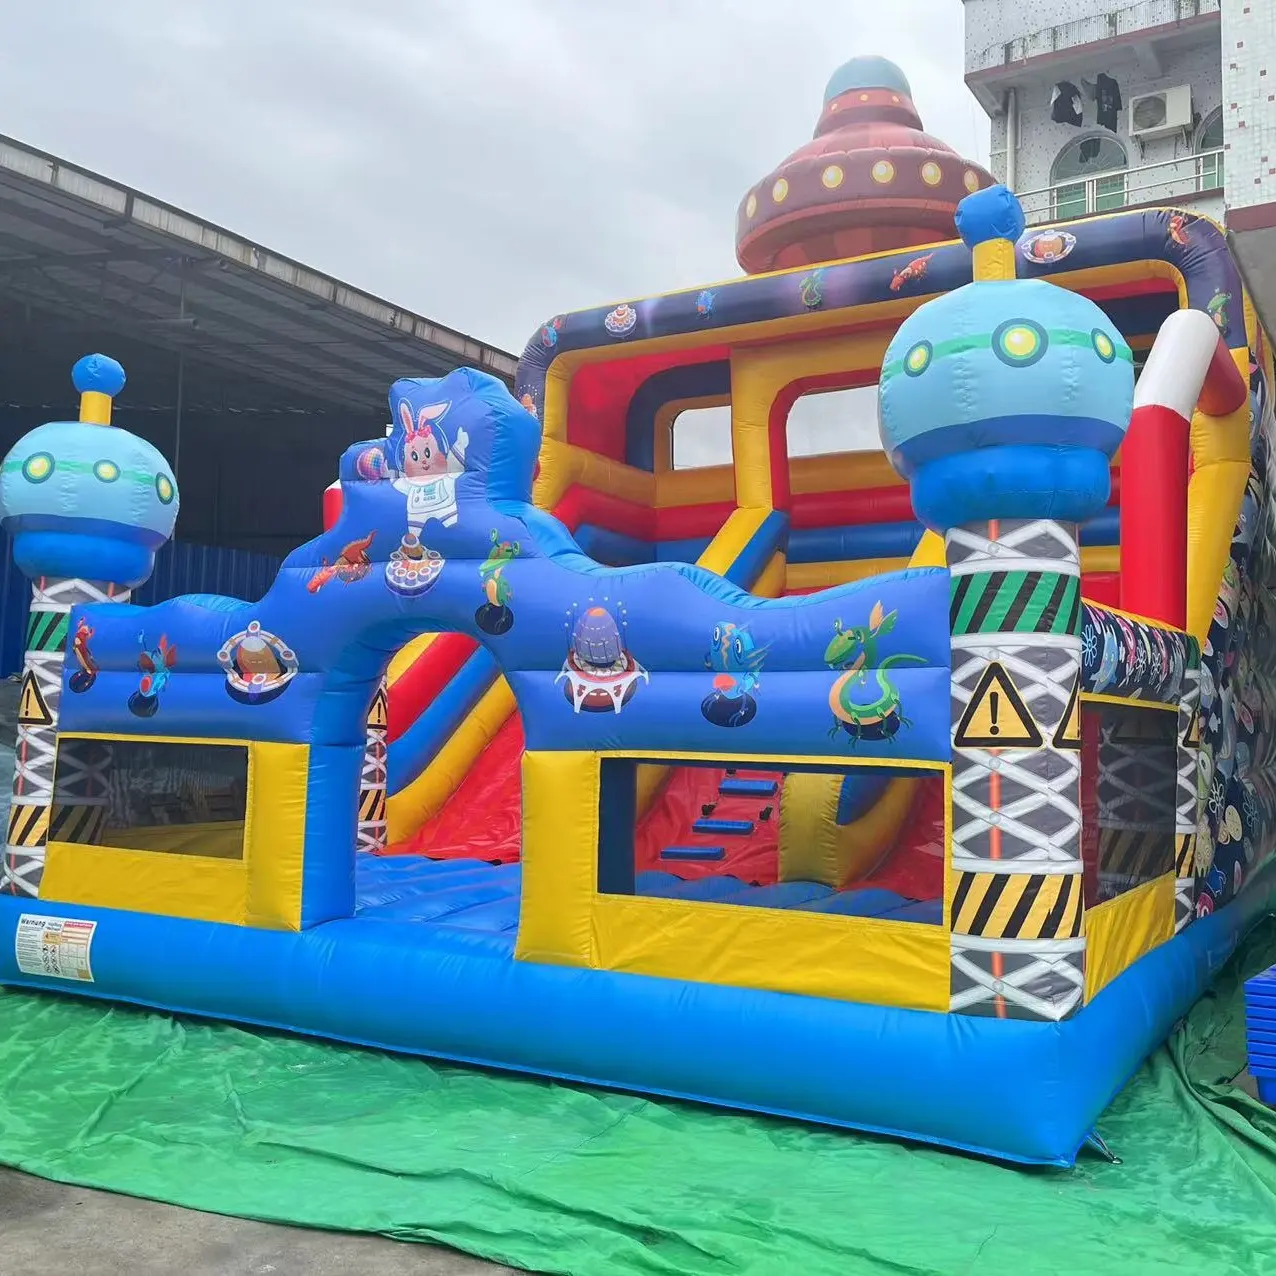 नई डिजाइन inflatable यूएफओ बाउंसर महल, inflatable यूएफओ बाउंसर स्लाइड खेल का मैदान के साथ अच्छी कीमत